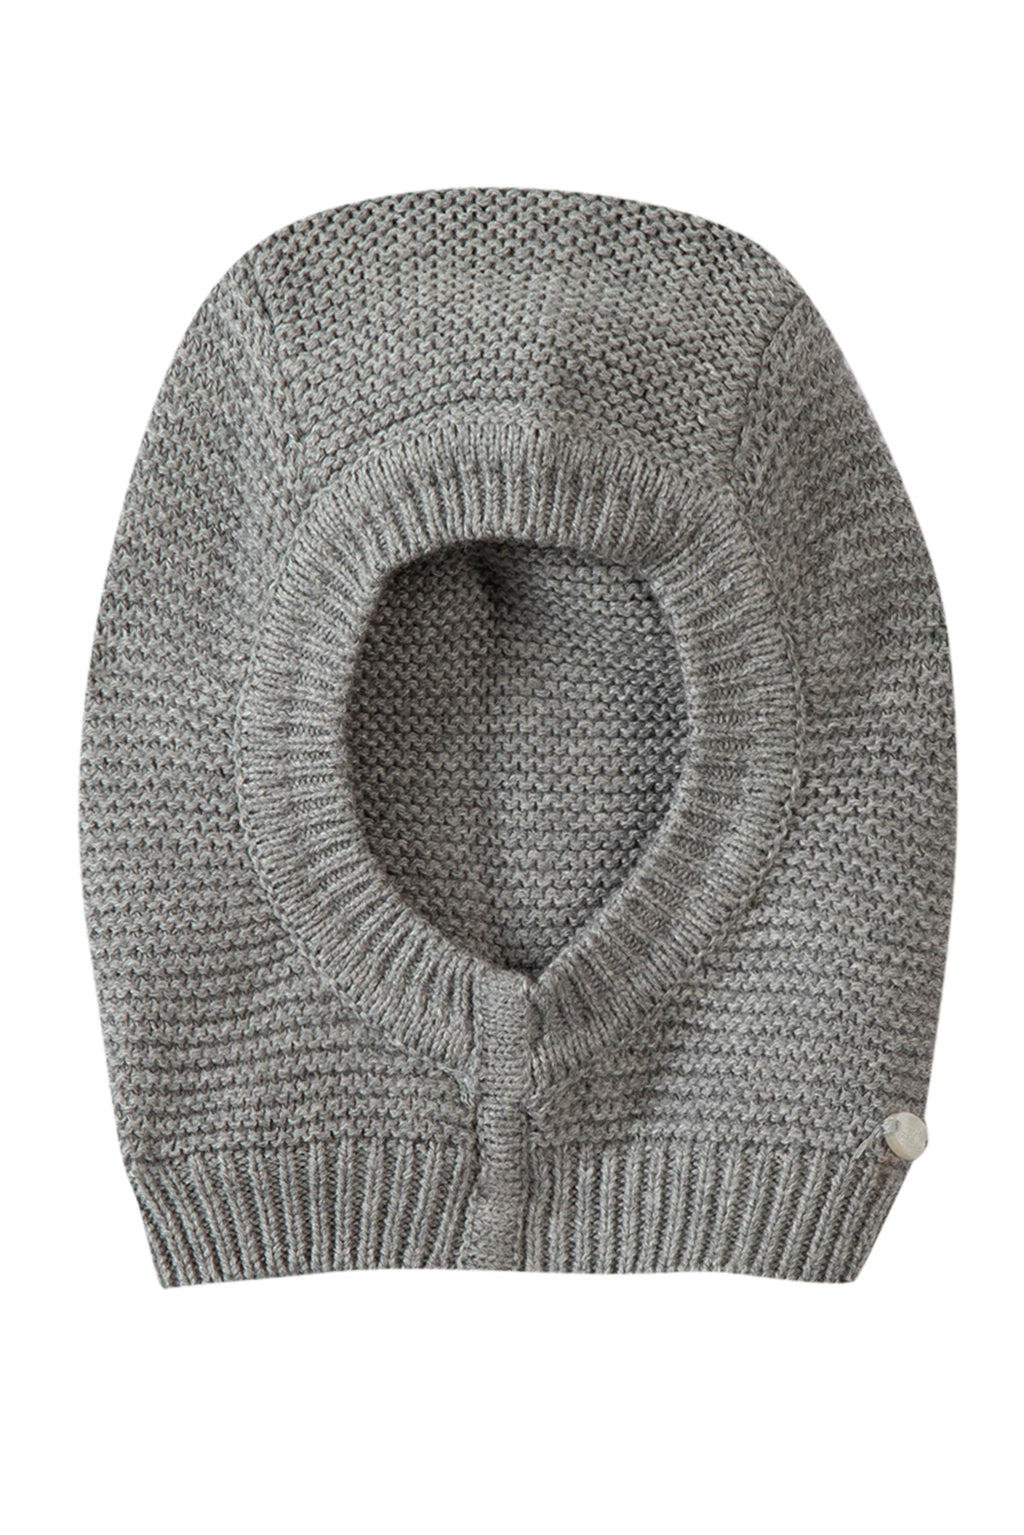 Cagoule - Gris chiné tricot